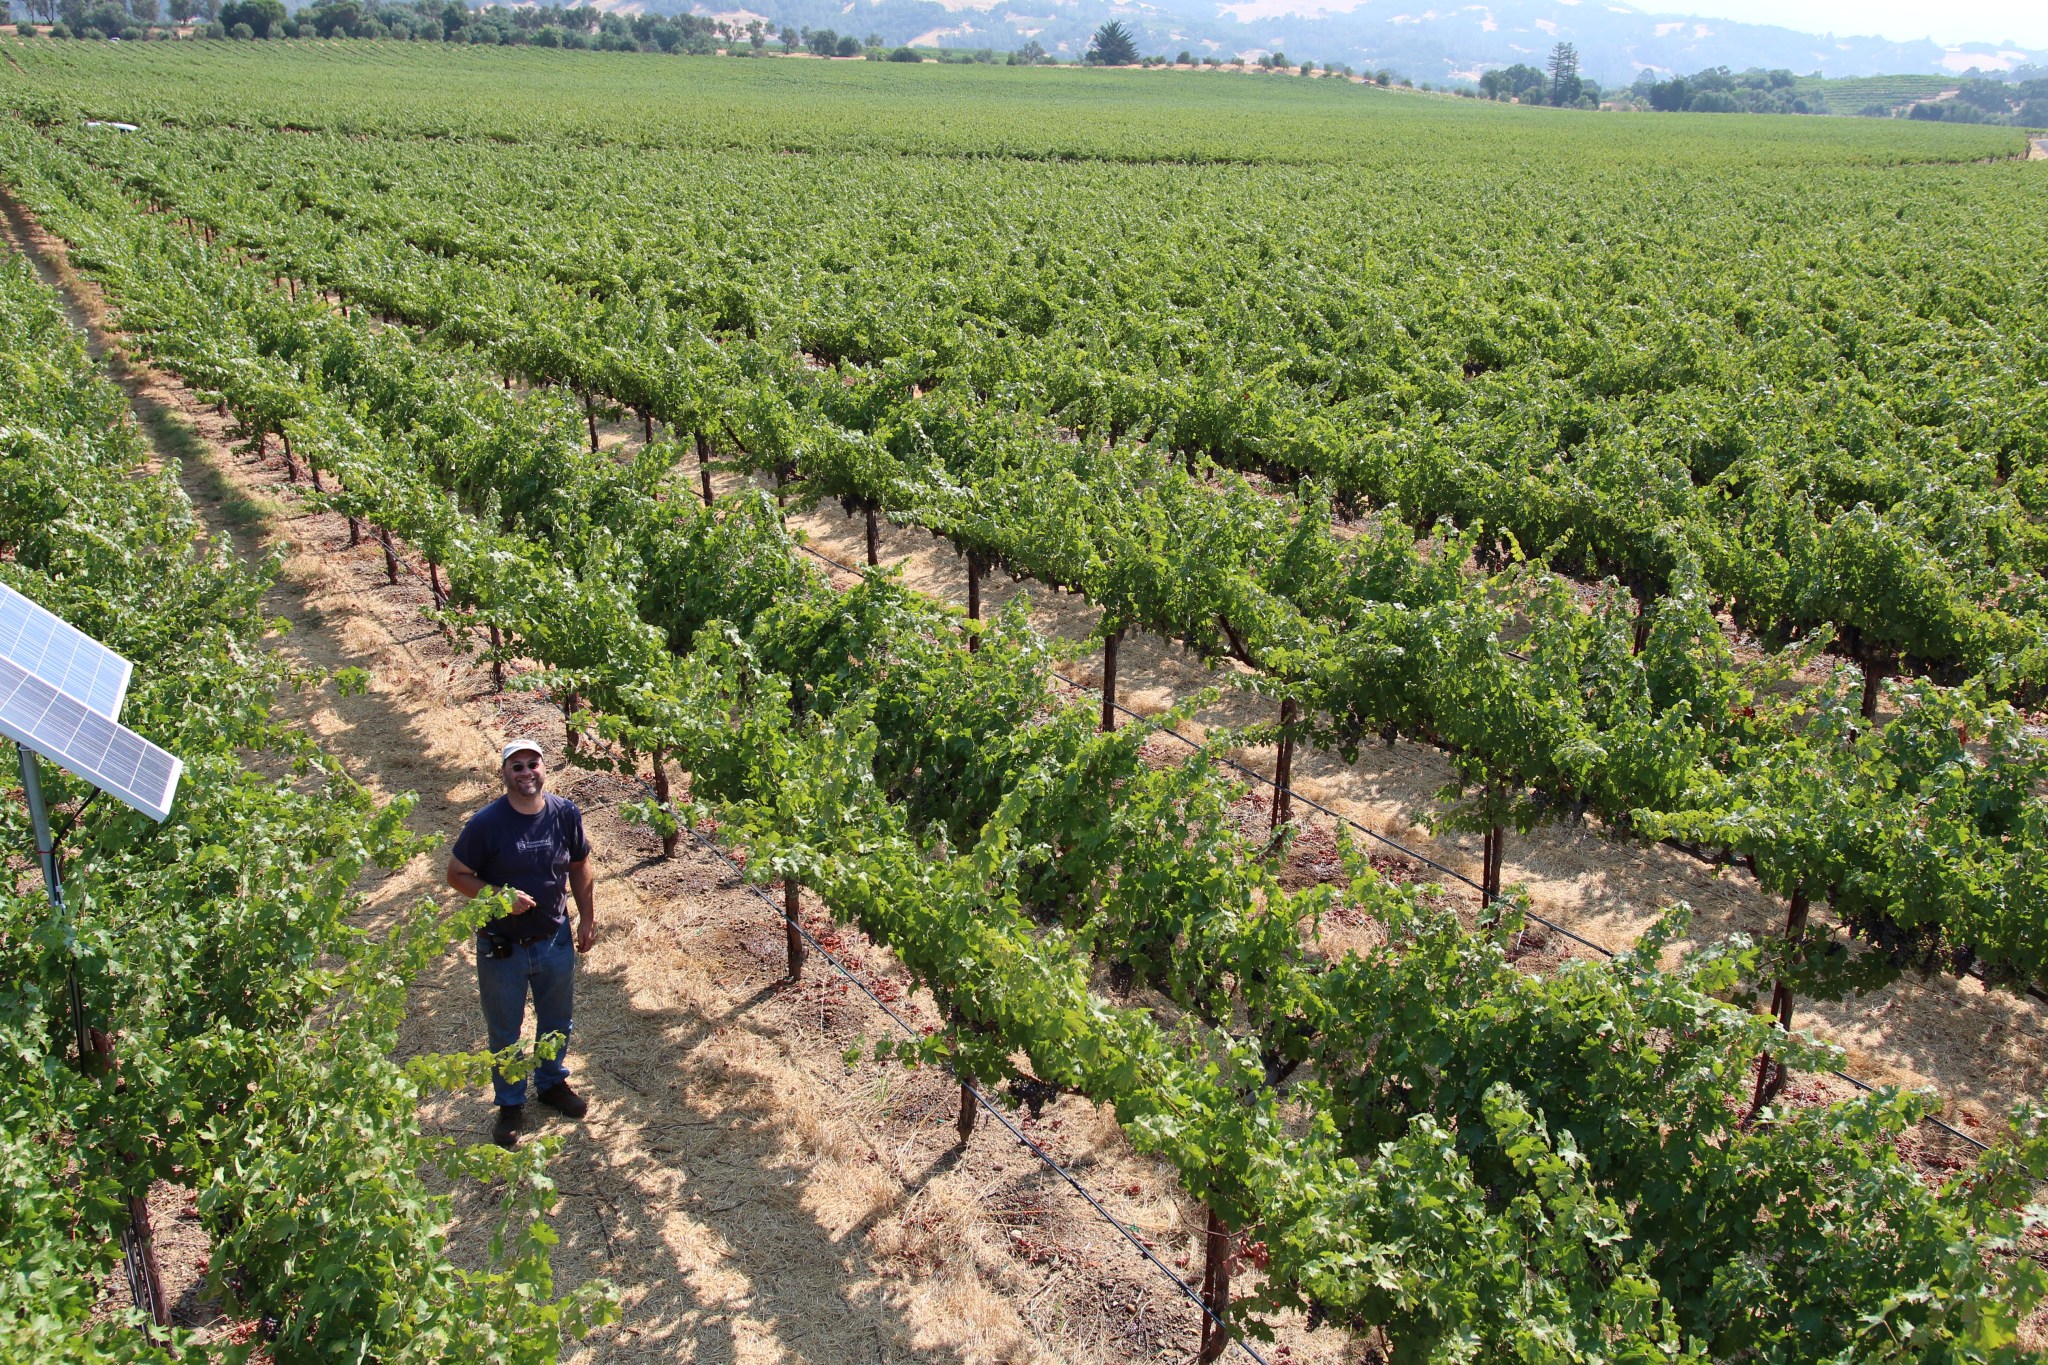 man smiles in between many rows of green grape vines in vineyard 